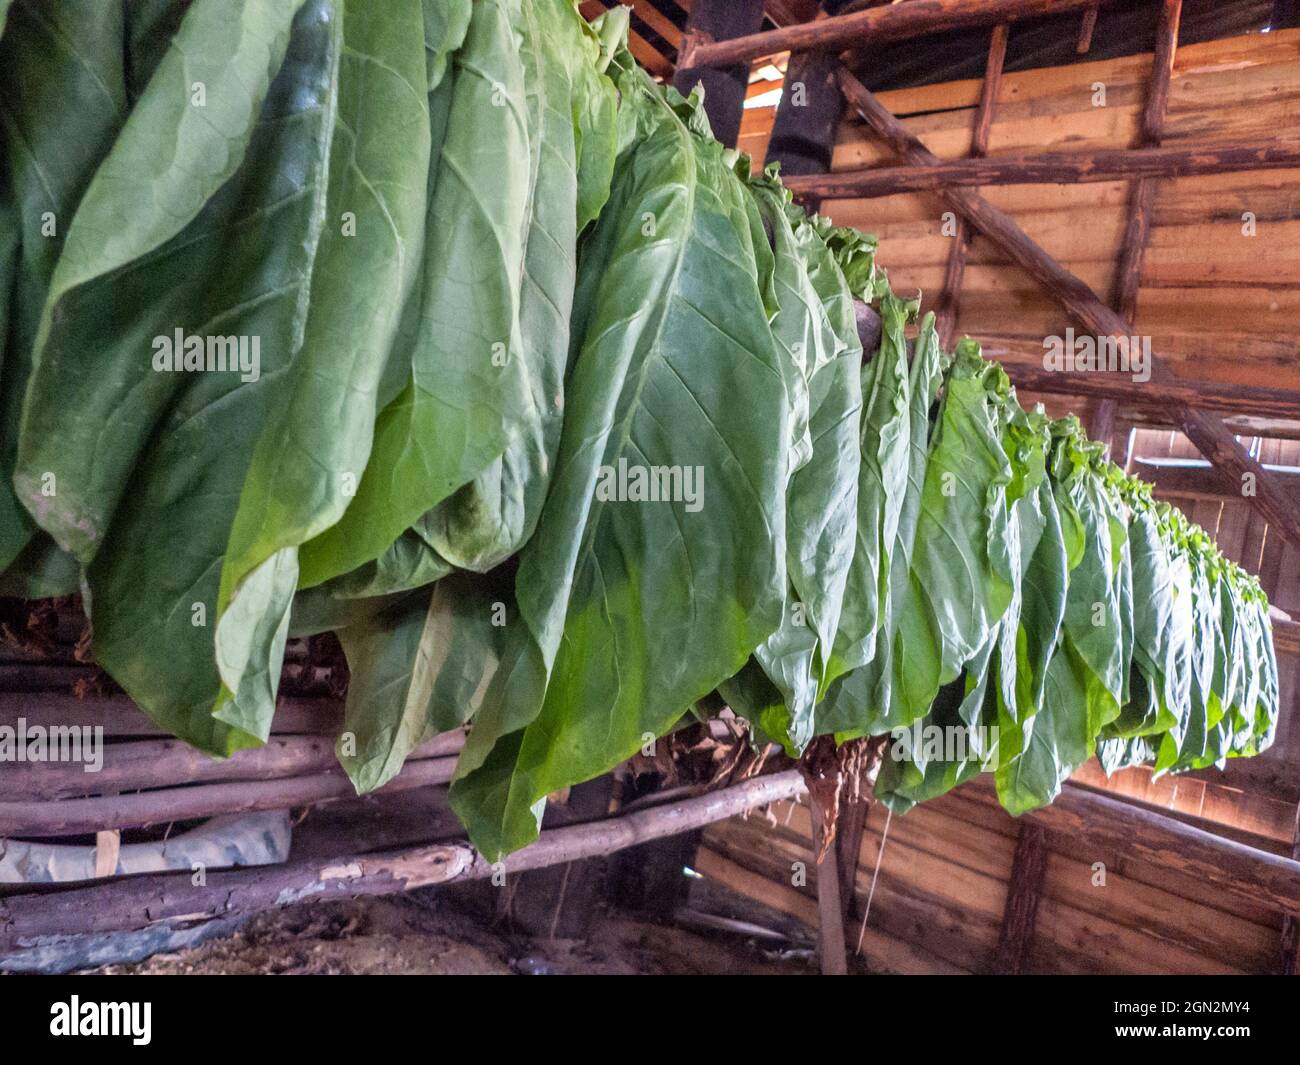 tobacco production Pinar del Rio, Cuba Stock Photo